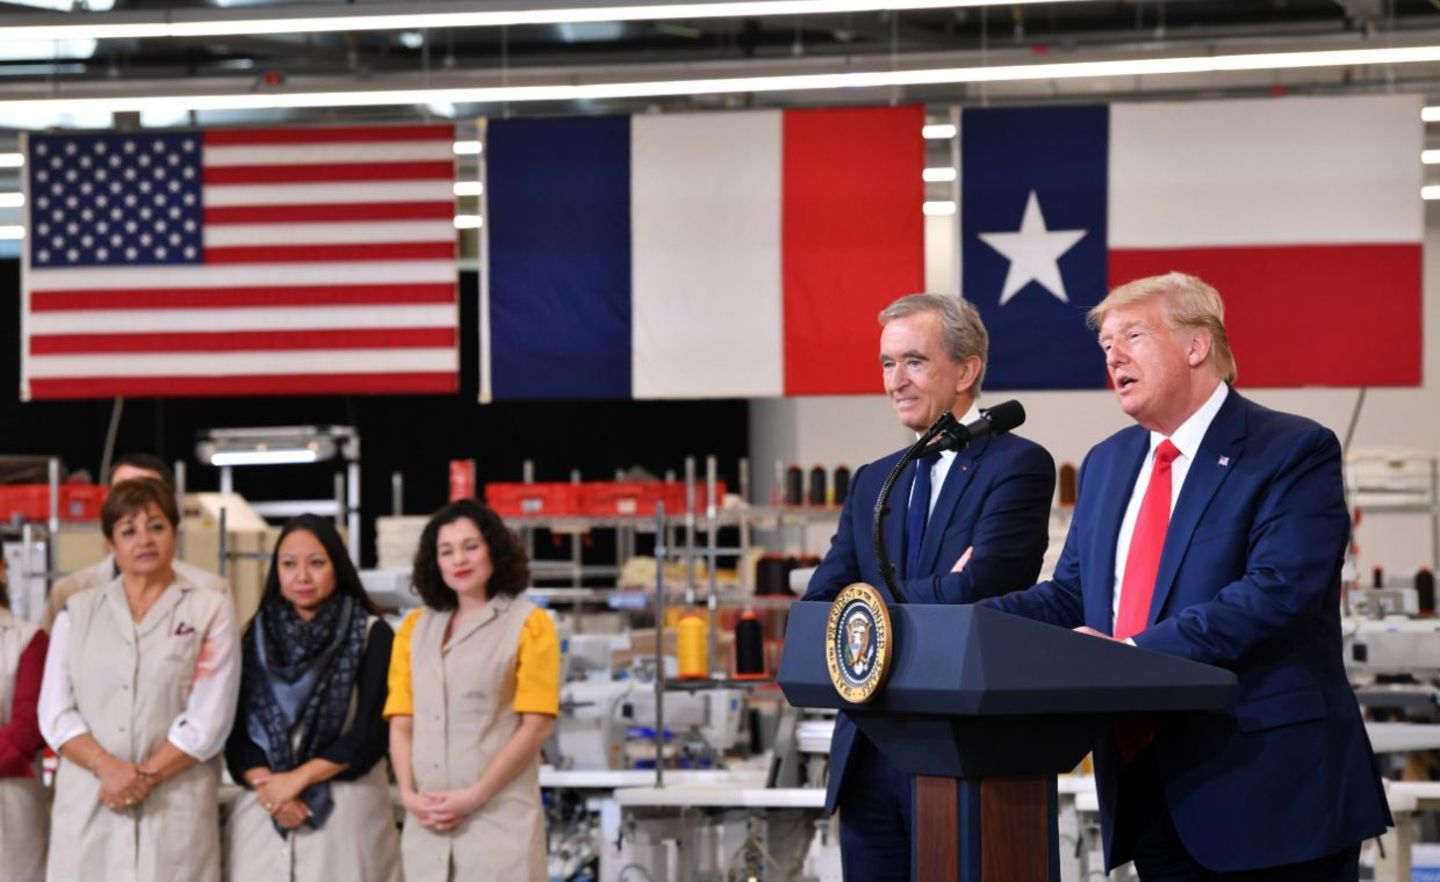 Das war die Welt noch in Ordnung: Im Oktober eröffneten LVMH-Chef Arnault (l.) und US-Präsident Trump ein Werk des Luxusgüterkonzerns in Texas